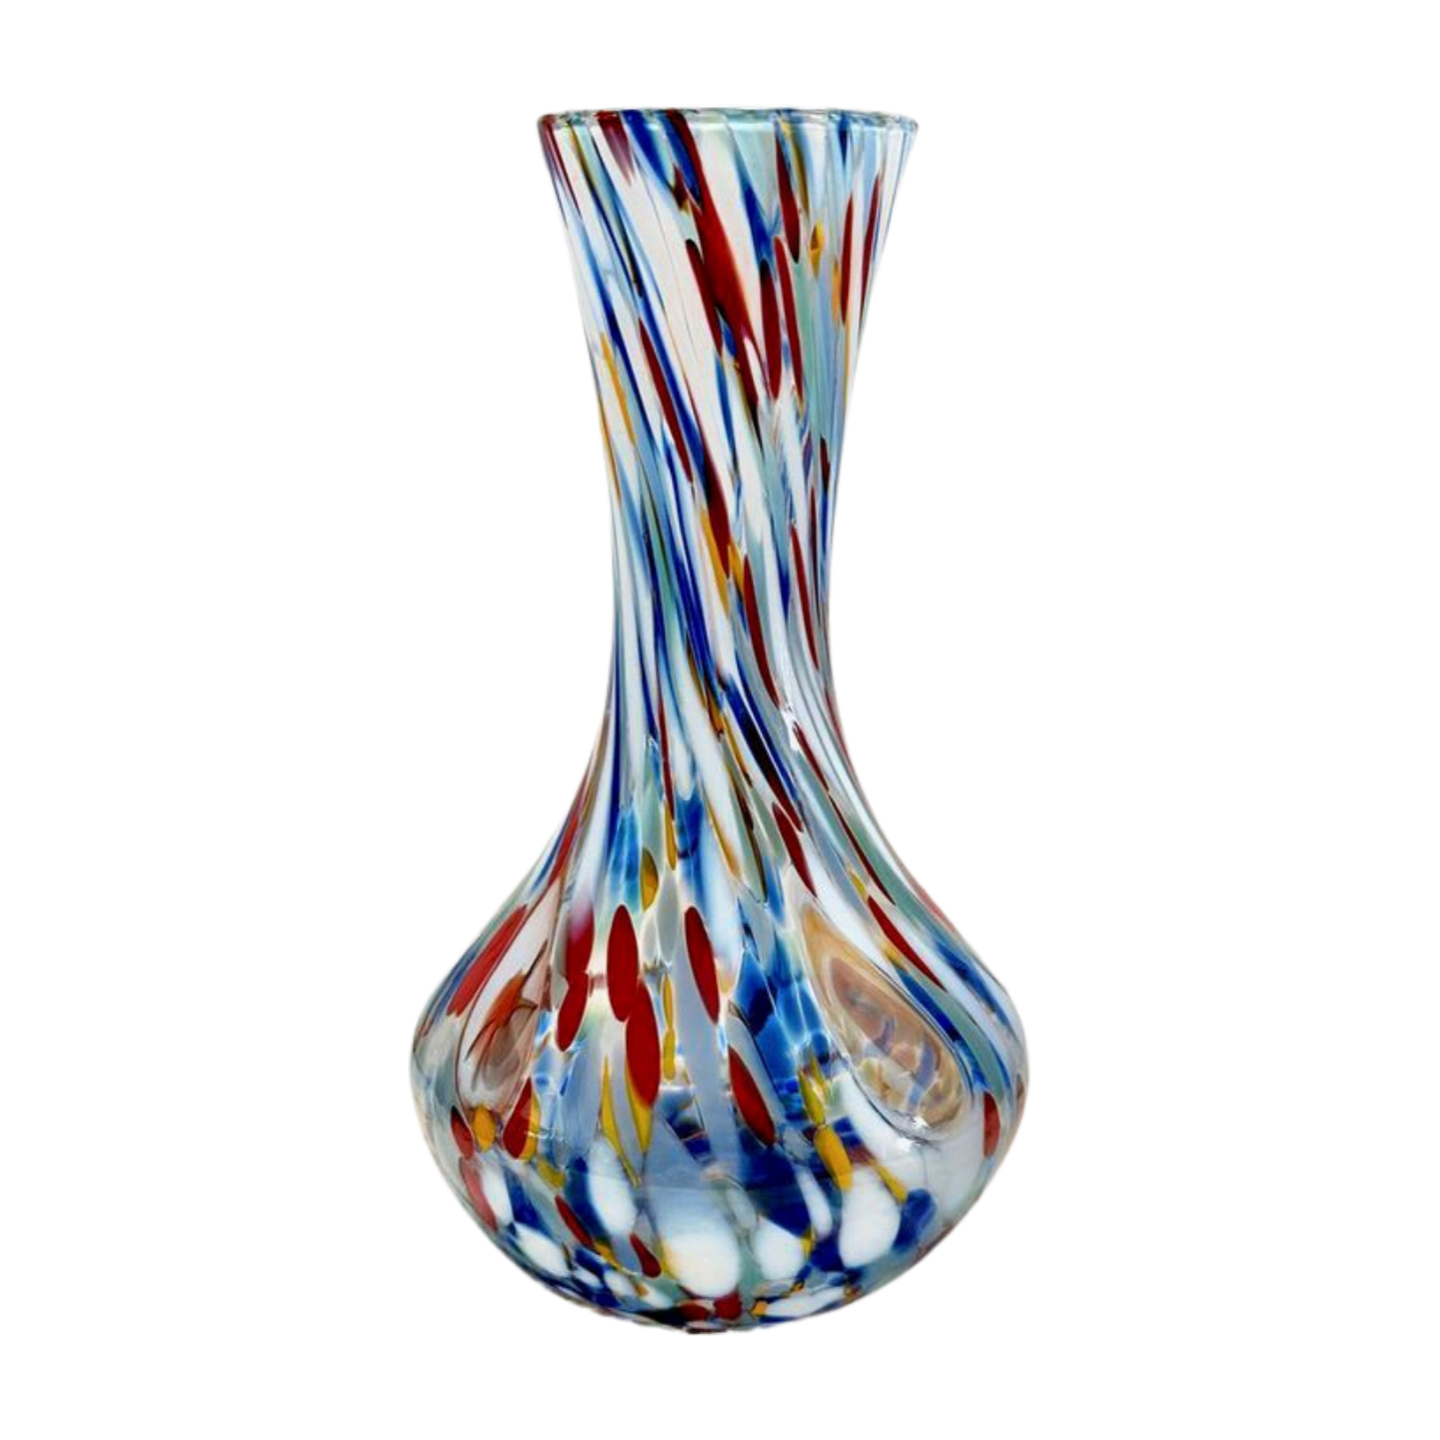 Murano glass vase in multicolor design. Hand-blown in Italy.